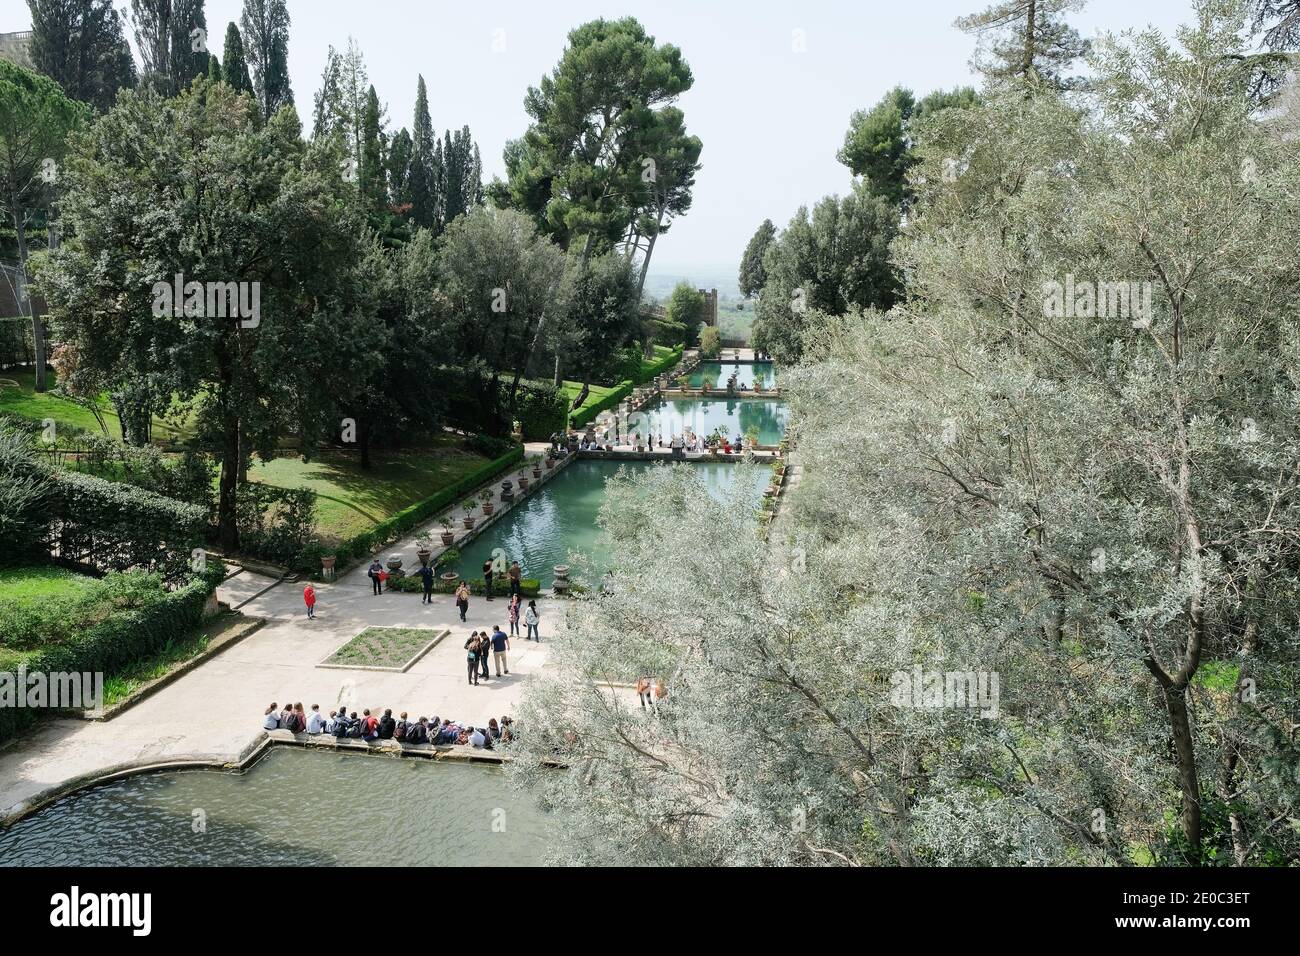 The three fish ponds (Peschiere) in the garden of Villa d'Este, Tivoli, Italy Stock Photo